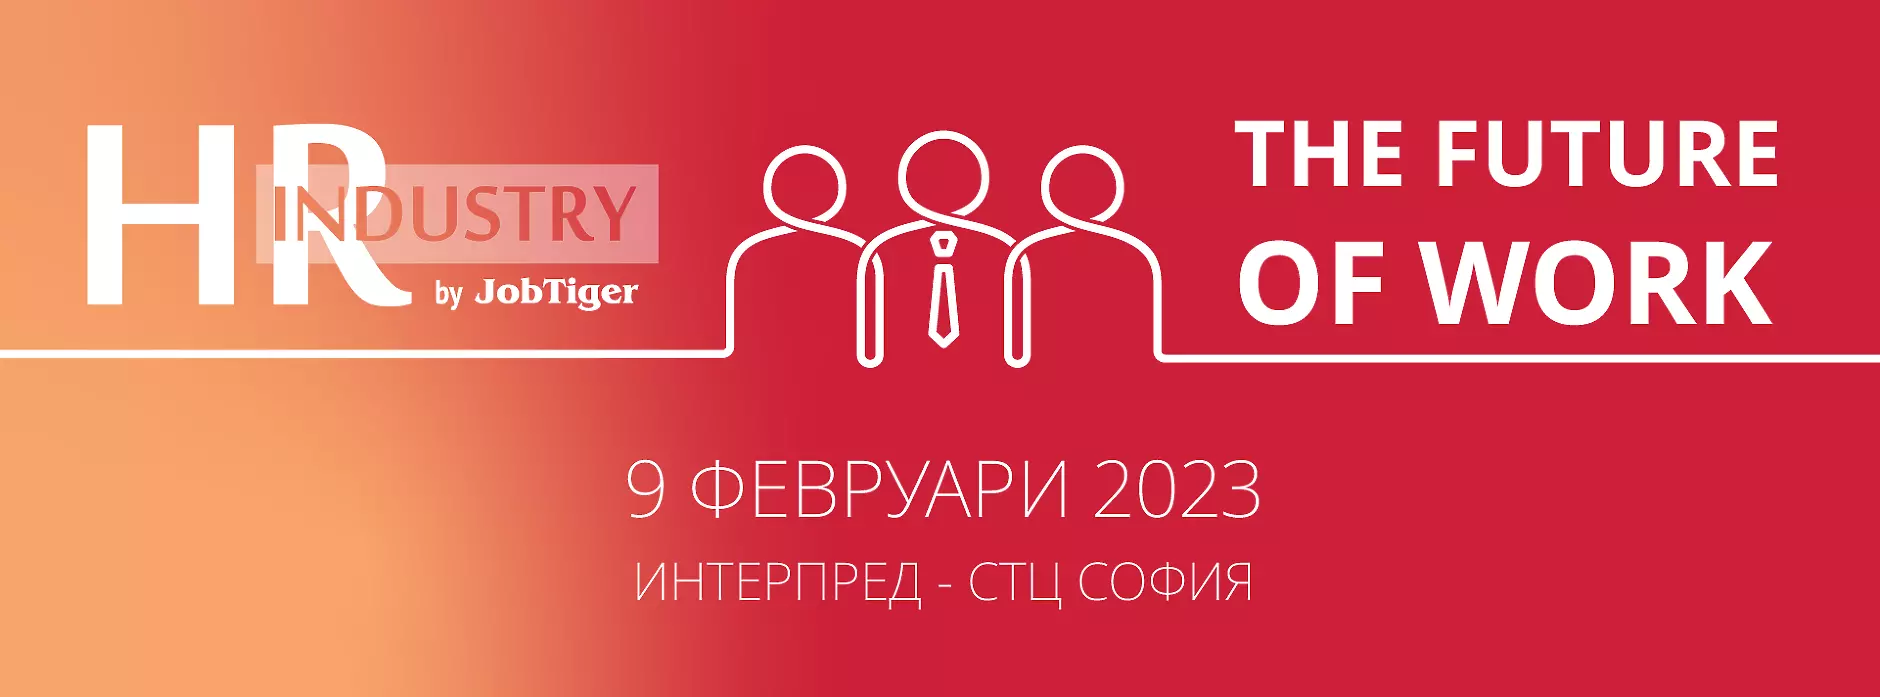  HR Industry 2023 представя новите тенденции в управлението на човешките ресурси на 9 февруари в Интерпред